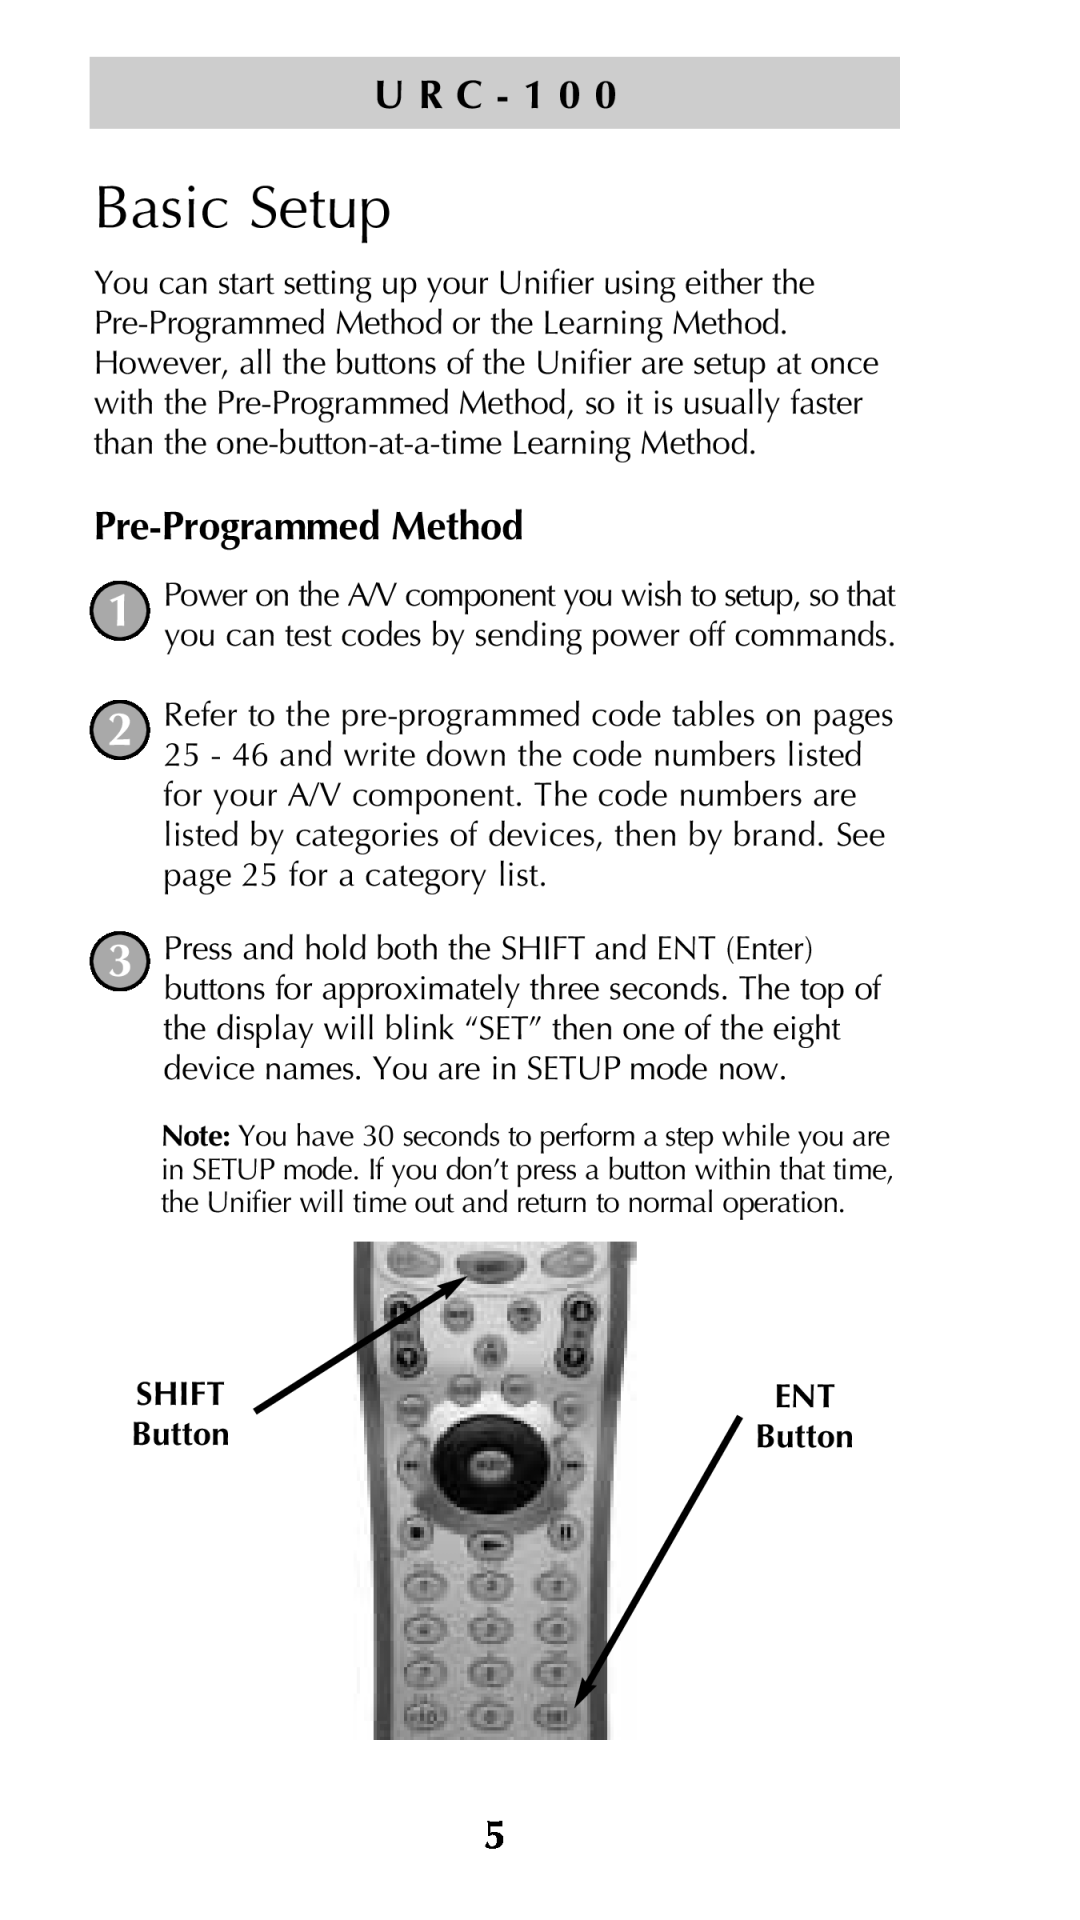 Universal Remote Control Unifier URC-100 owner manual Basic Setup, Pre-Programmed Method, U R C - 1 0 